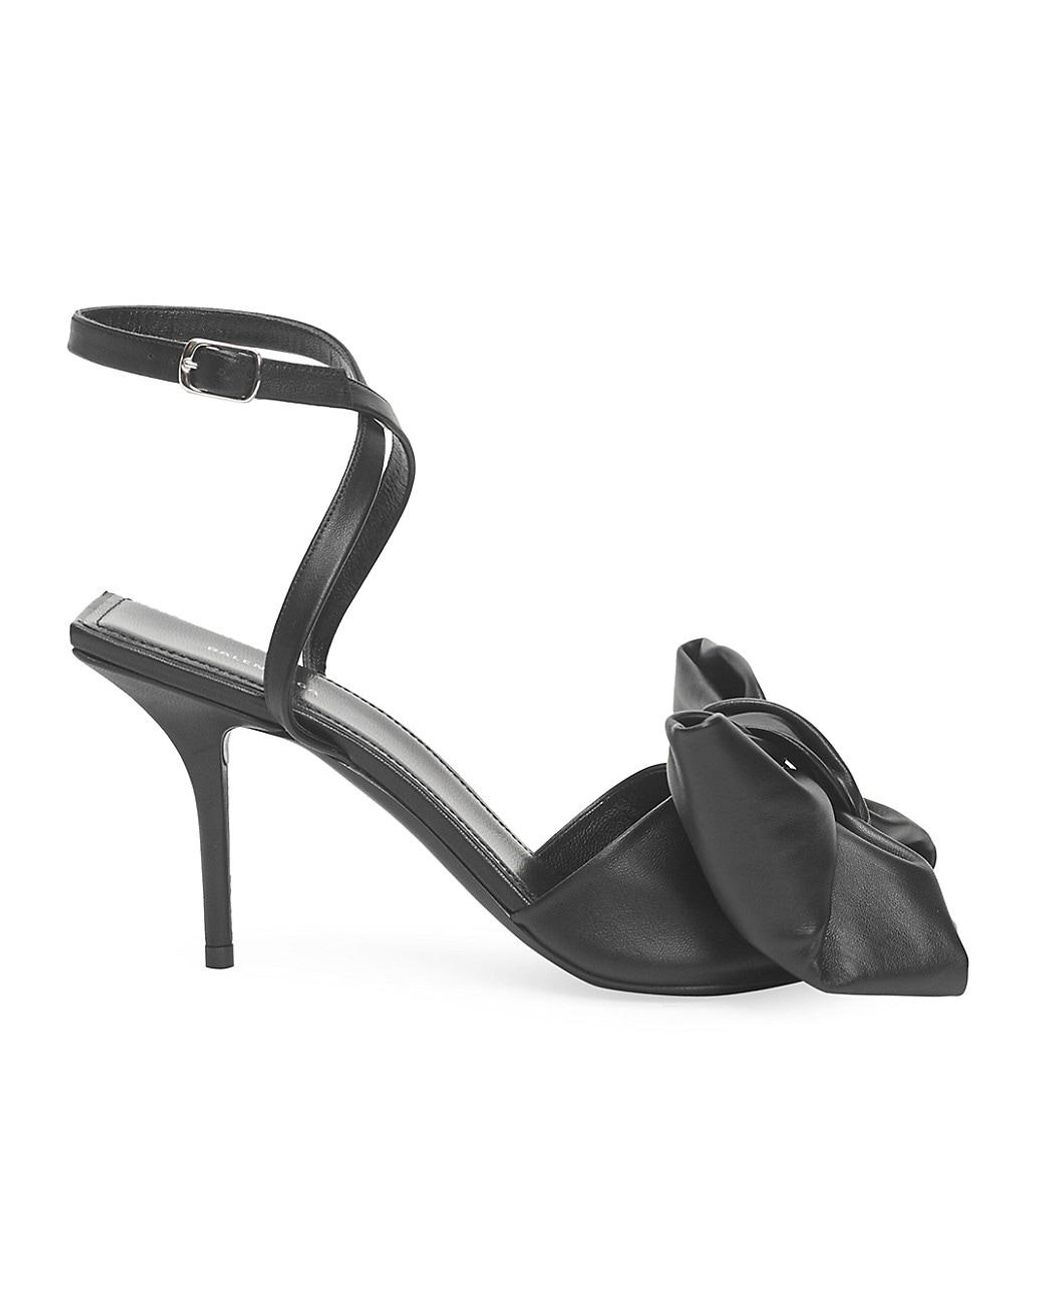 Balenciaga Bow Leather Sandal in Black | Lyst